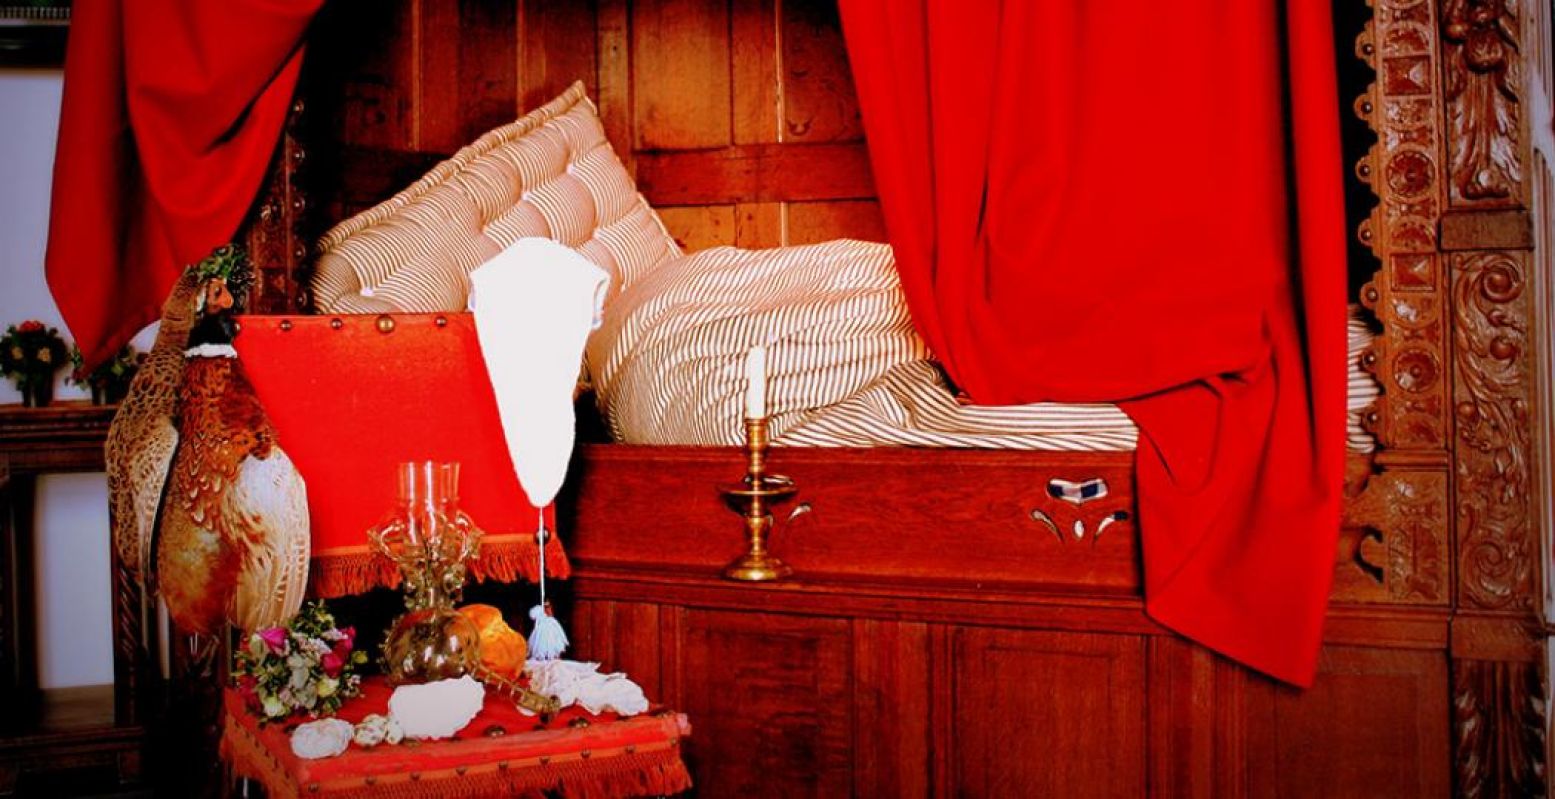 Tijdens een rondleiding op valentijnsavond op het Muiderslot leer je alles over romantiek in de zeventiende eeuw. Op de foto zie je een beddekoets uit vervlogen tijden. Foto: Muiderslot.